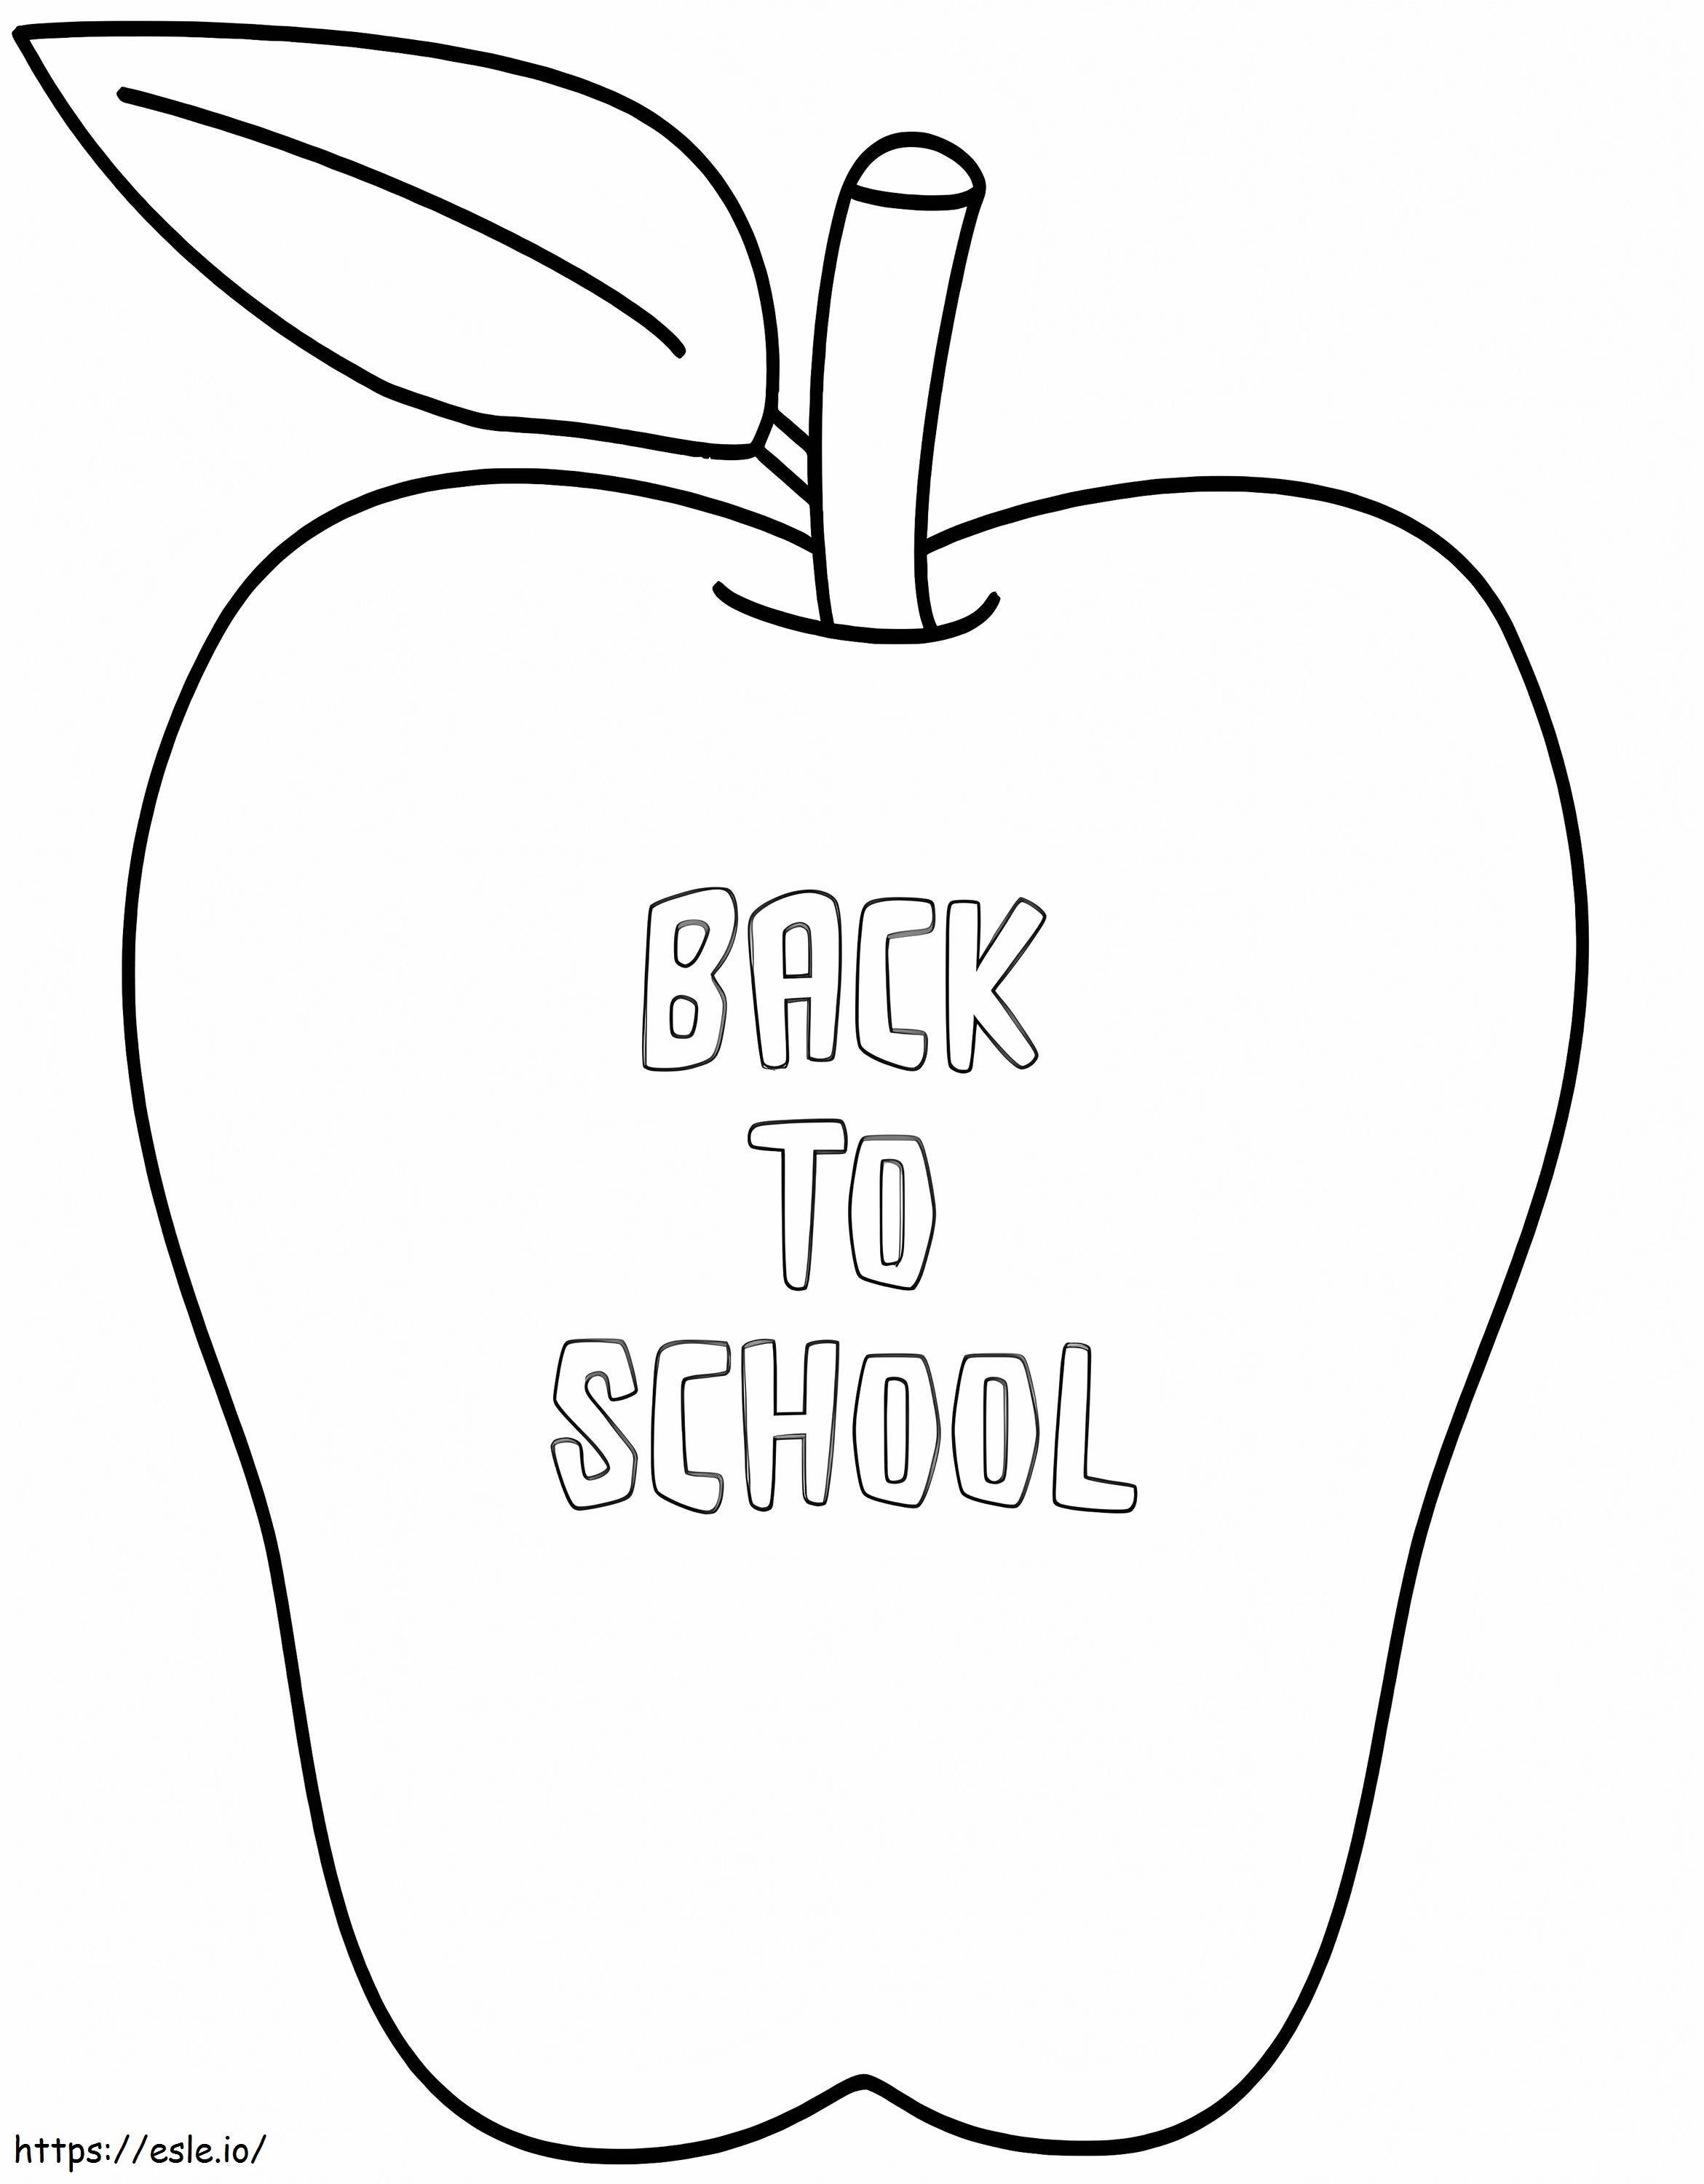 Apple Zurück zur Schule 2 ausmalbilder